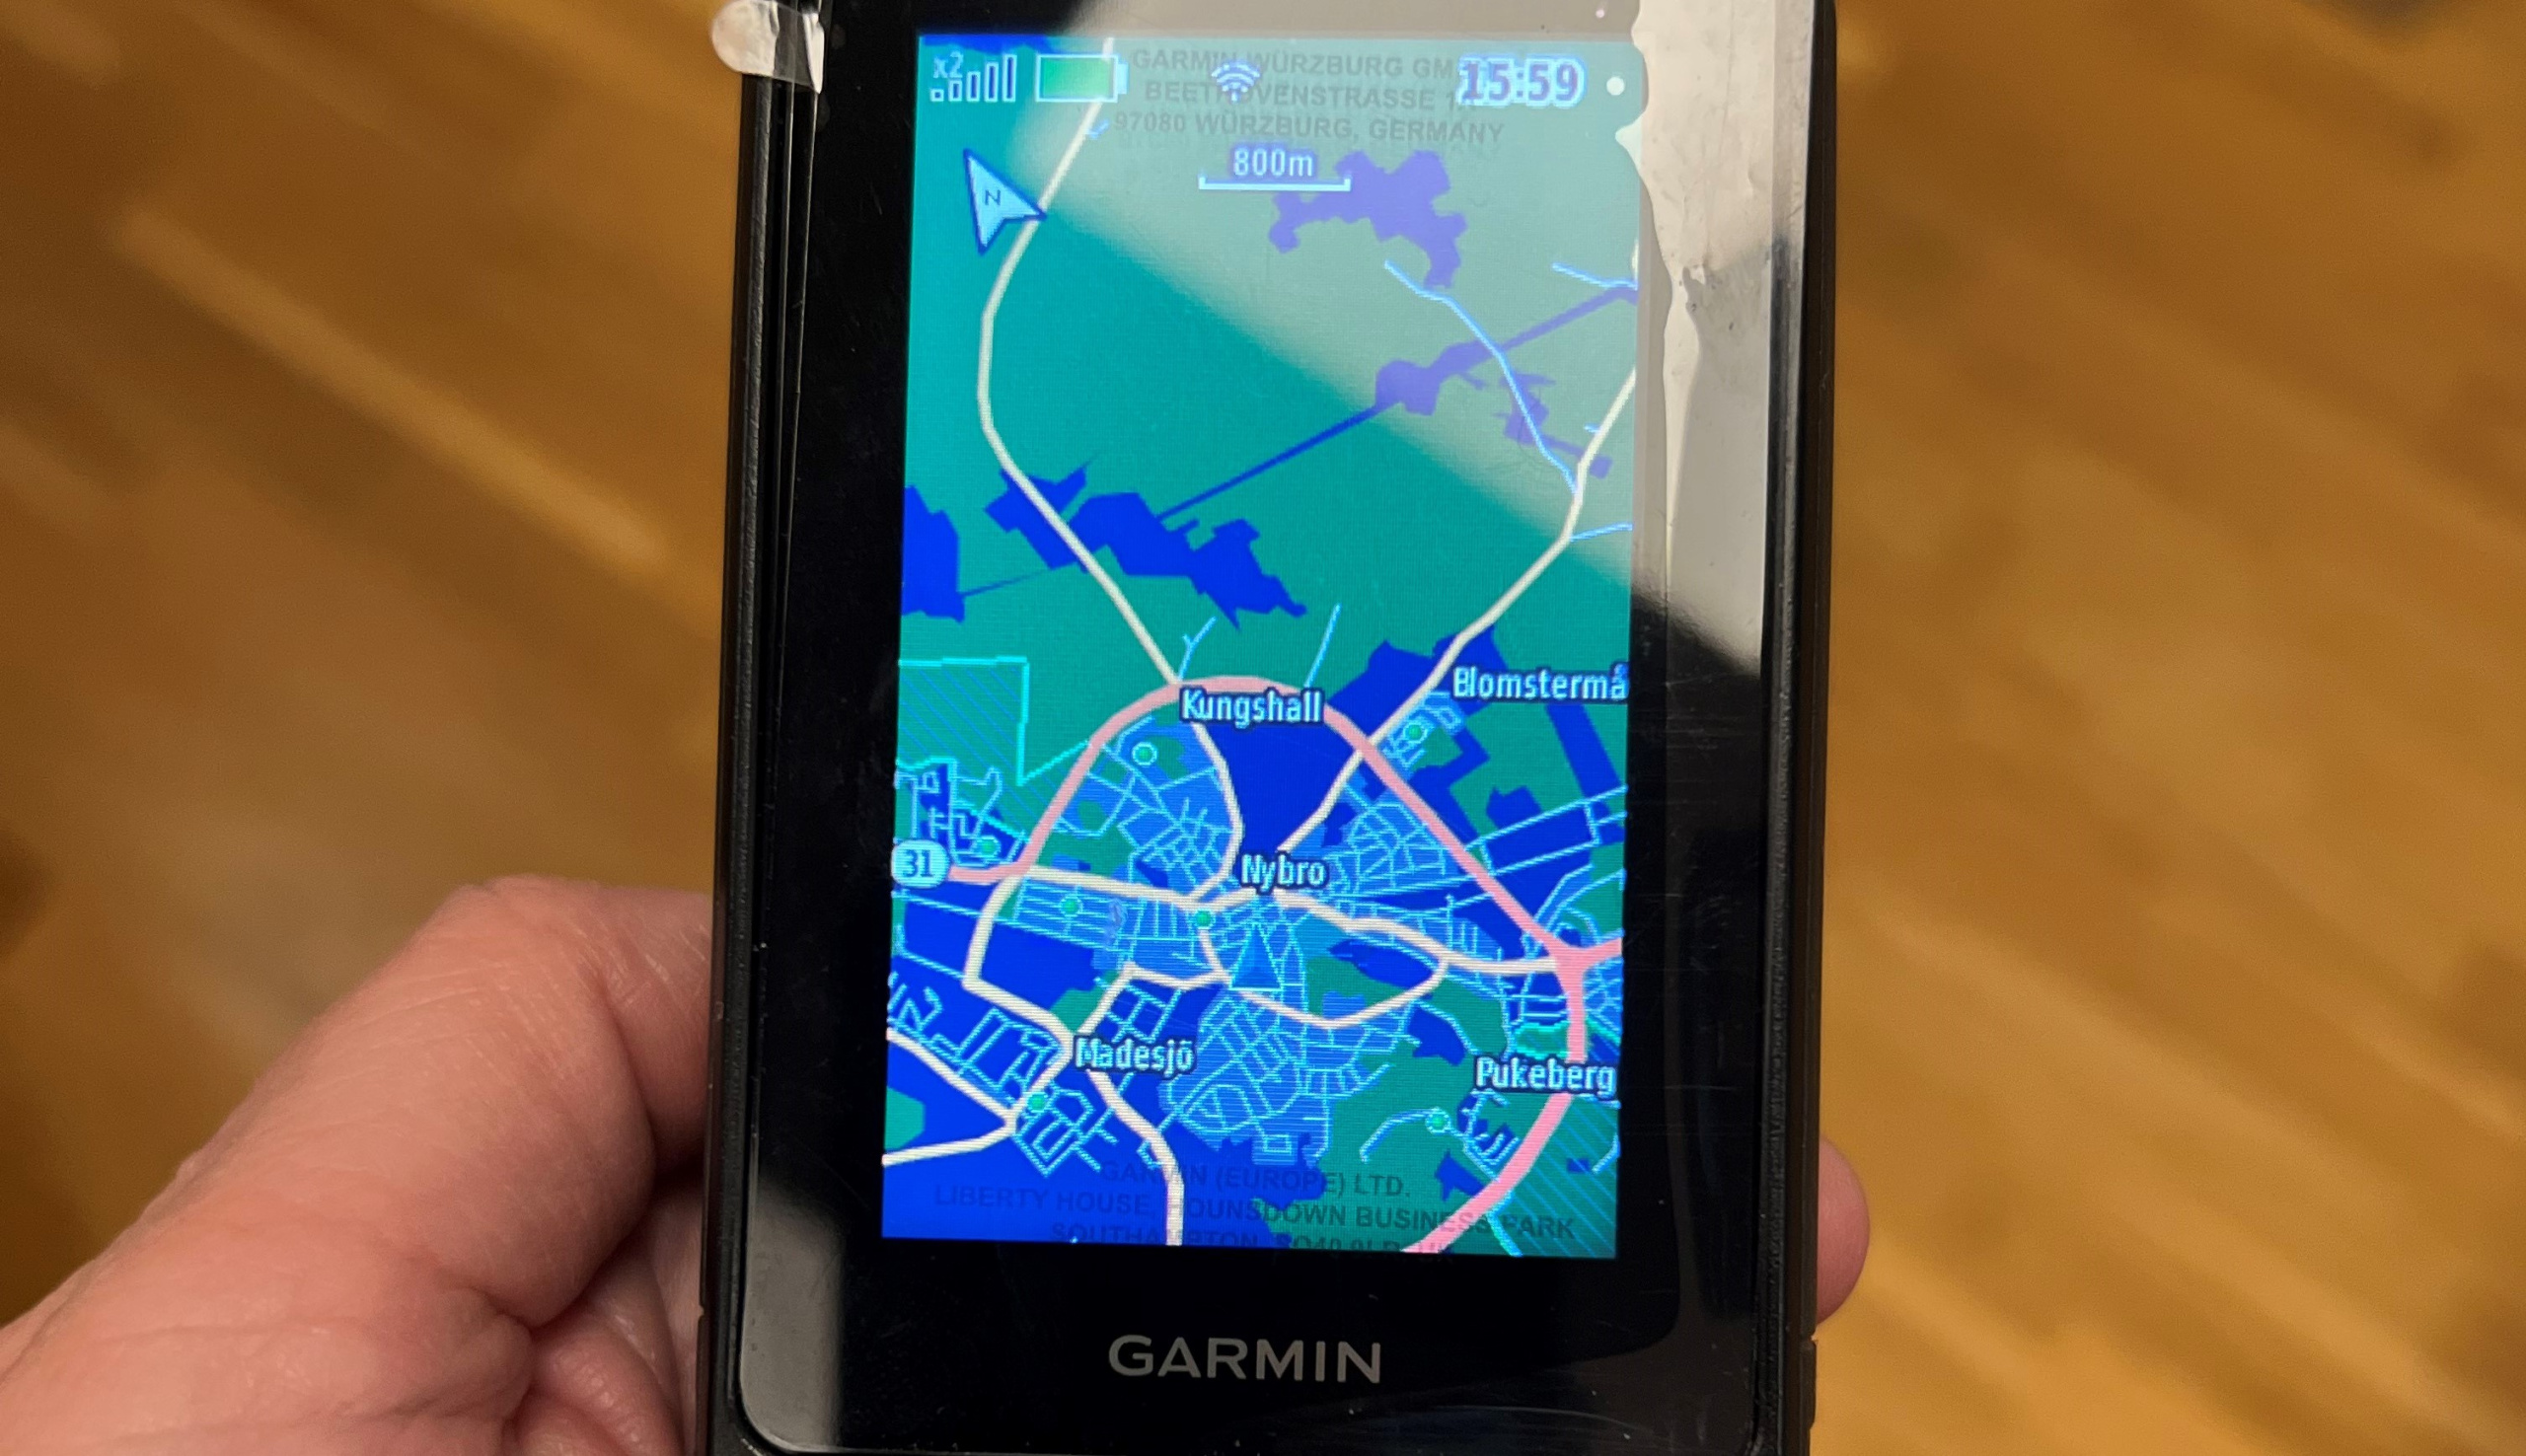 Primer plano de un GPS Garmin de mano que muestra un mapa del centro de Nybro.